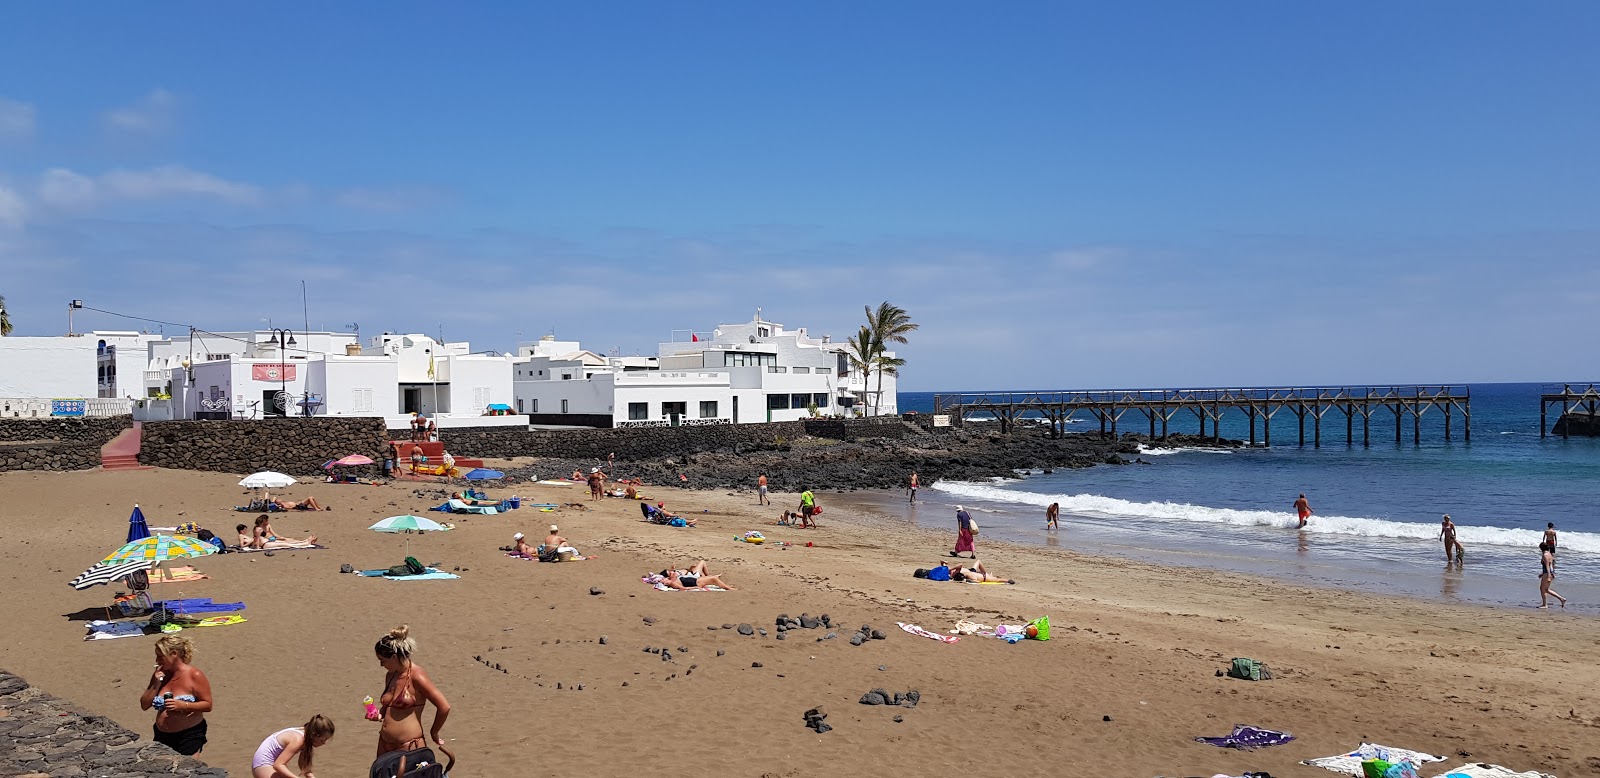 Playa de la Garita'in fotoğrafı doğal alan içinde bulunmaktadır